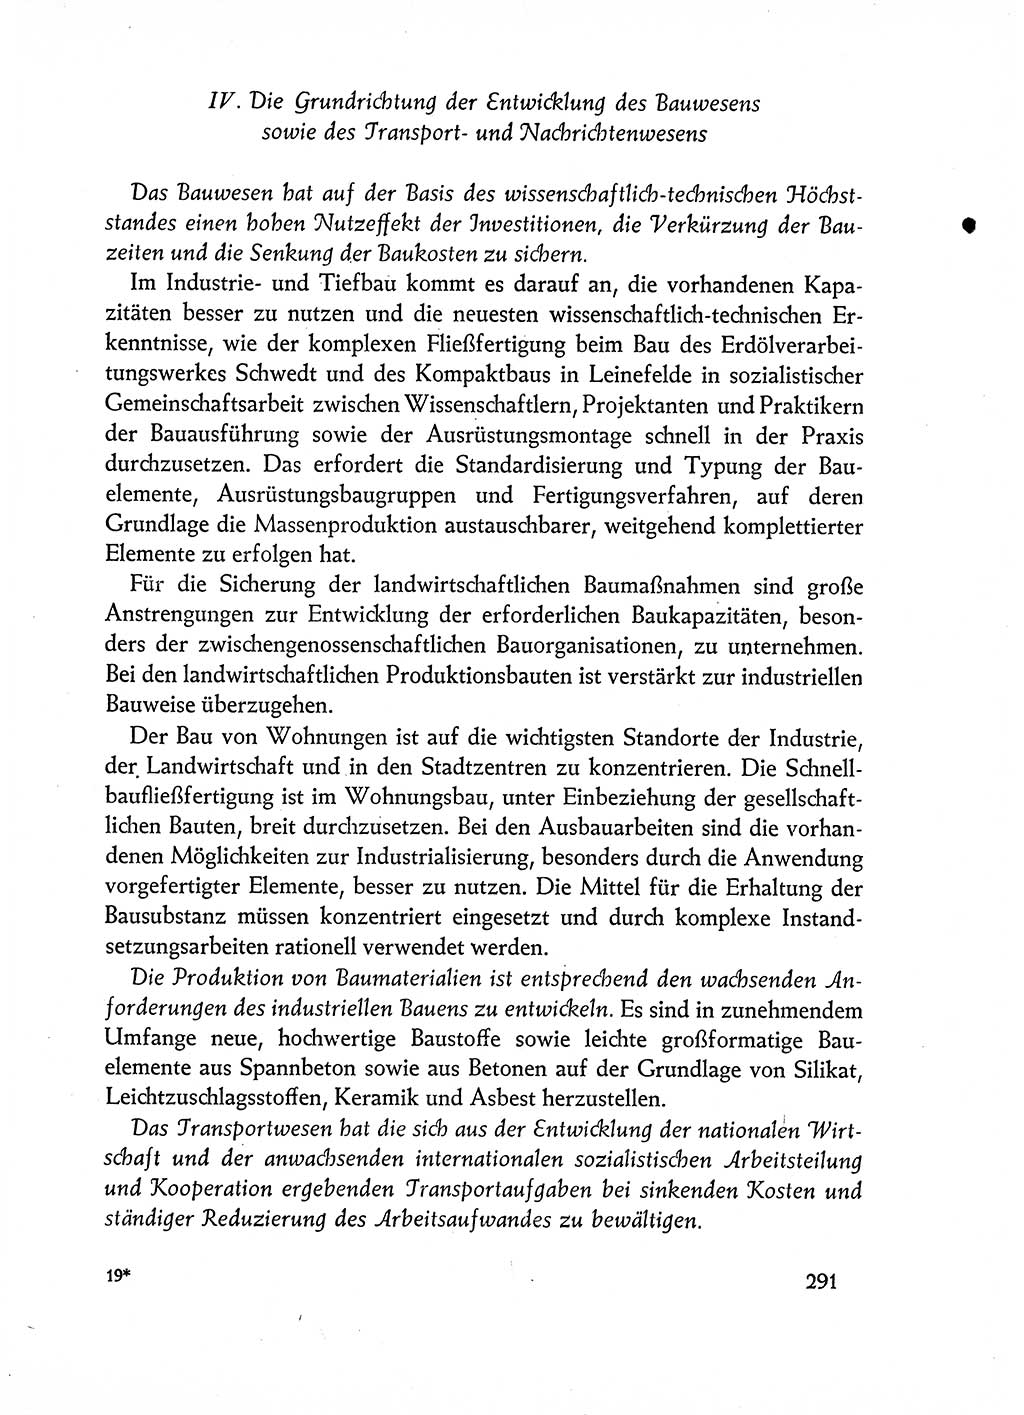 Dokumente der Sozialistischen Einheitspartei Deutschlands (SED) [Deutsche Demokratische Republik (DDR)] 1962-1963, Seite 291 (Dok. SED DDR 1962-1963, S. 291)